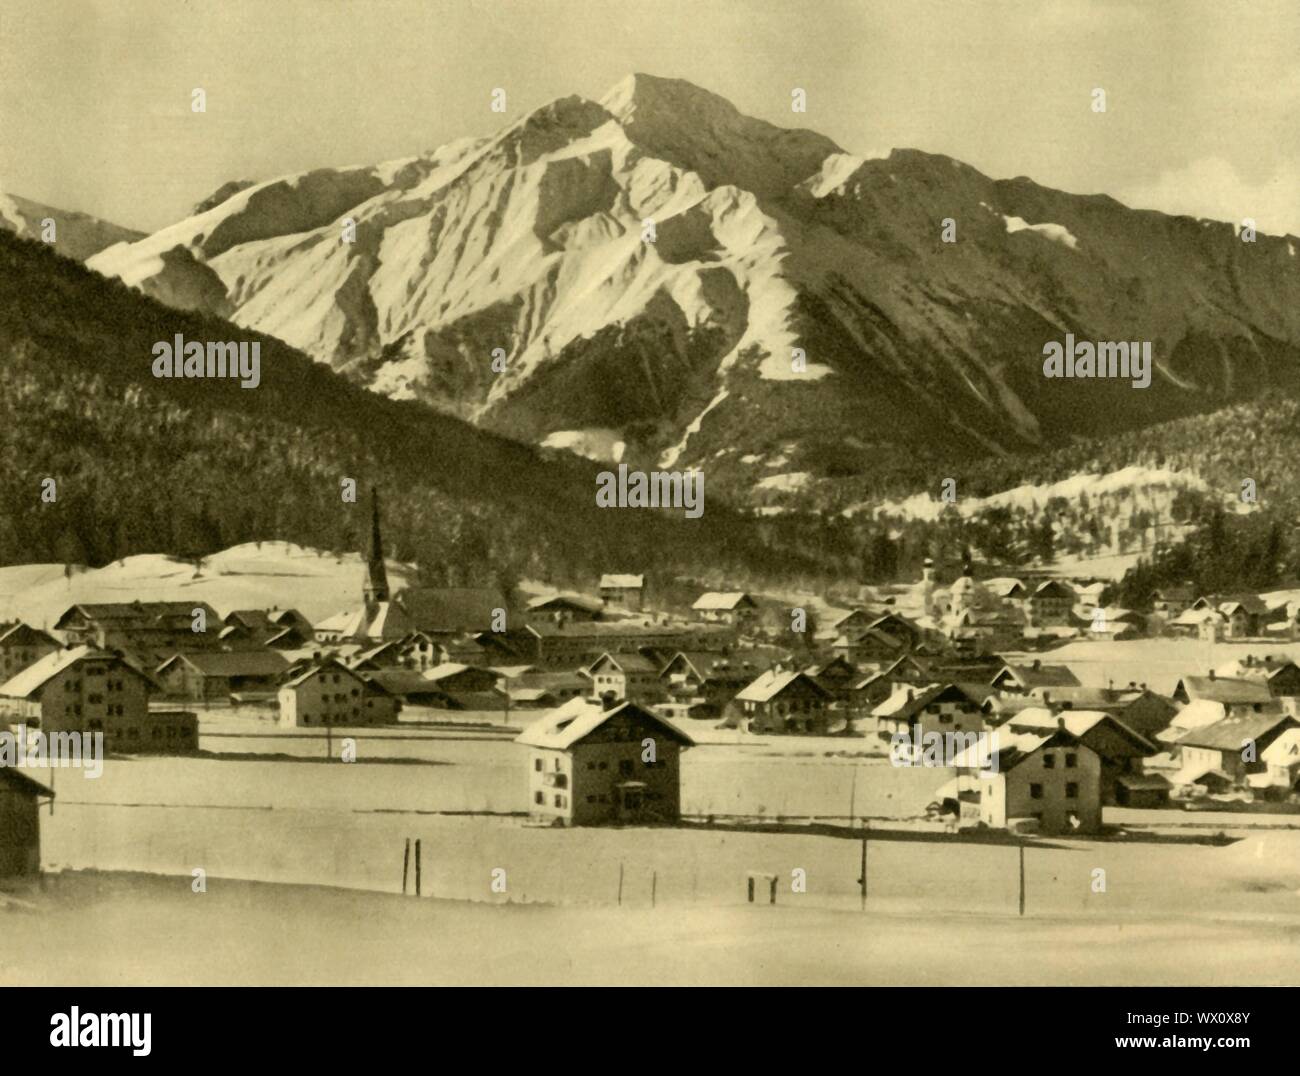 Seefeld in Tirol, Österreich, c 1935. Das Skigebiet Dorf Seefeld liegt auf  einem Plateau zwischen den Wettersteingebirge und Karwendel. Von "&#xd6;  Österreich - Land und Volk", (Österreich, Land und Leute). [R. Lechner (